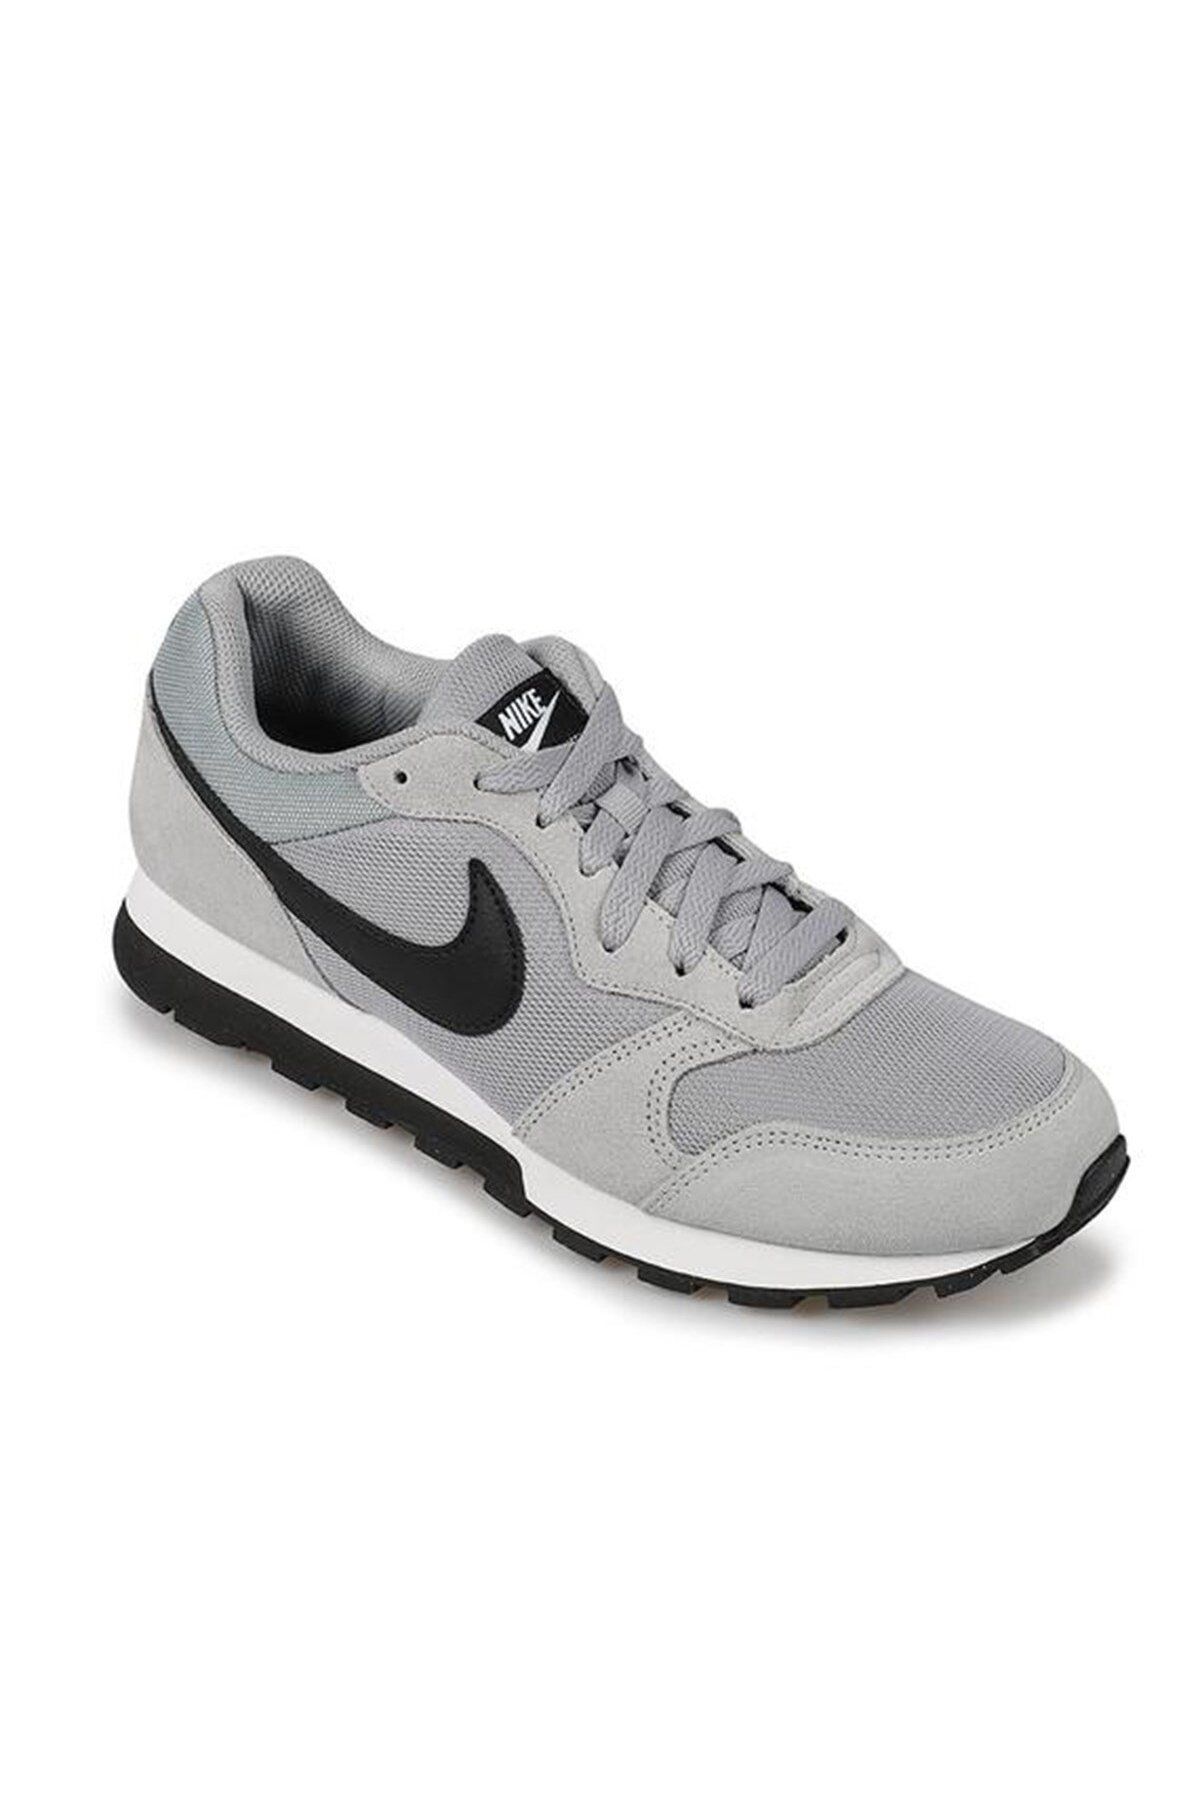 Nike Md Runner 2 Erkek Günlük Ayakkabı